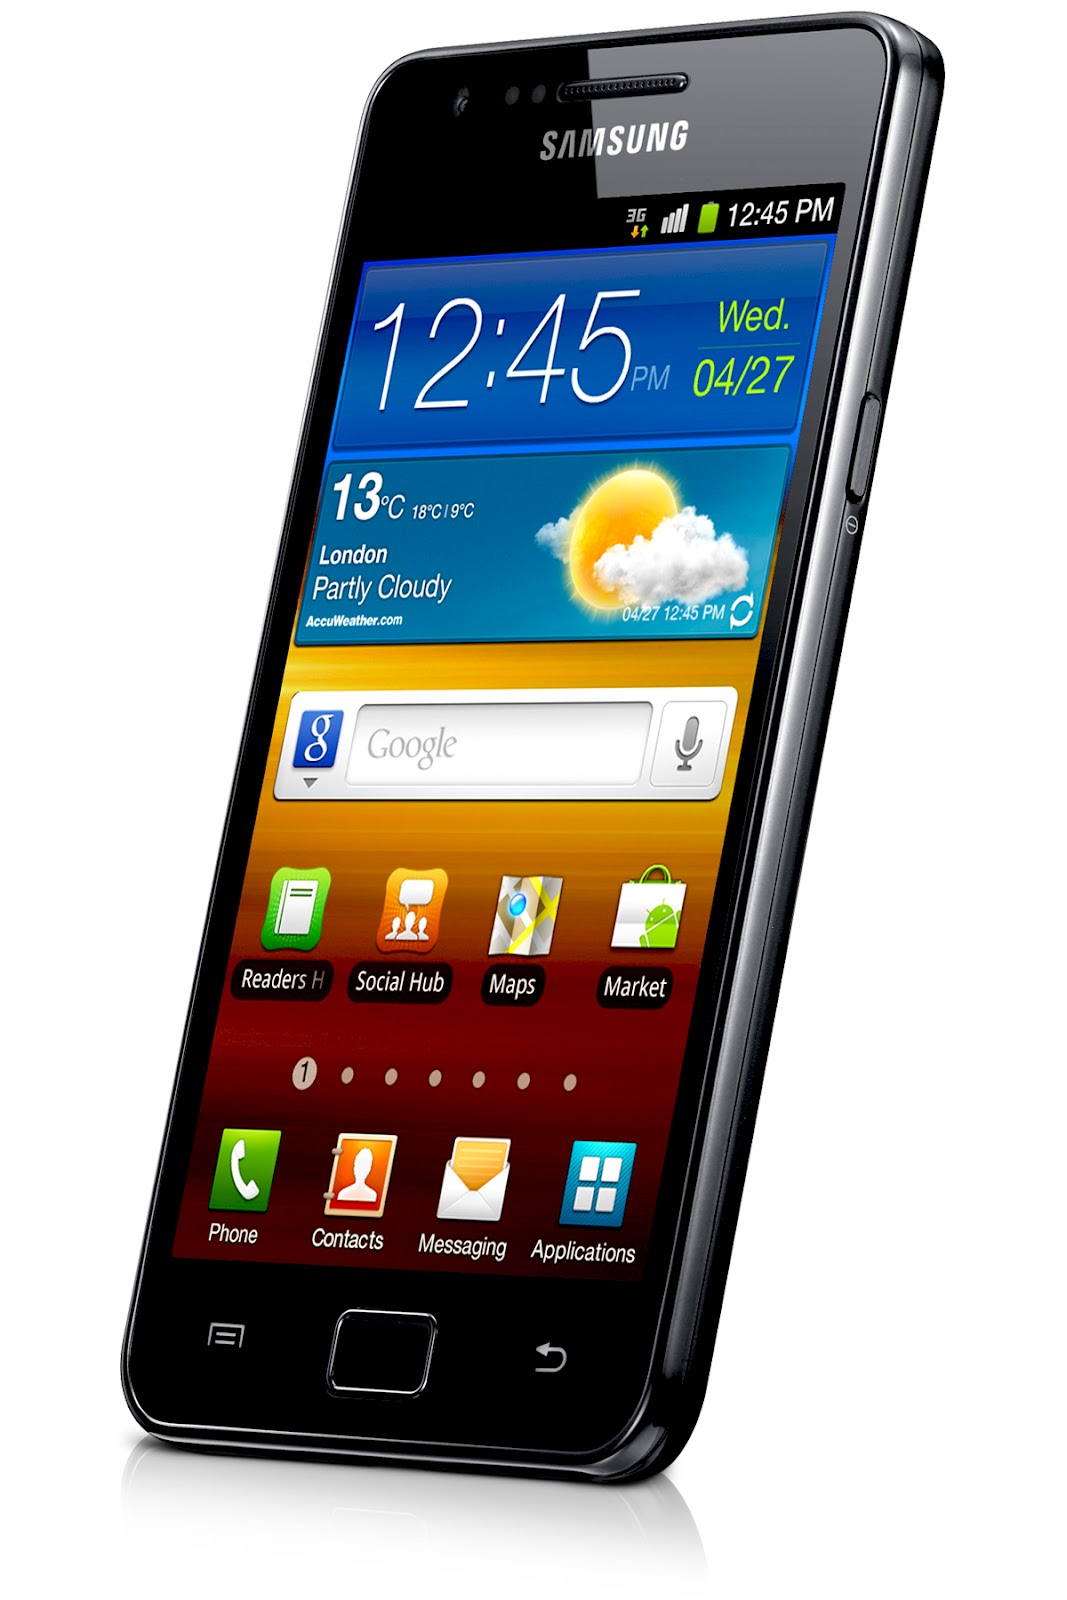 galaxie s2 wallpaper,mobiltelefon,gadget,kommunikationsgerät,tragbares kommunikationsgerät,smartphone